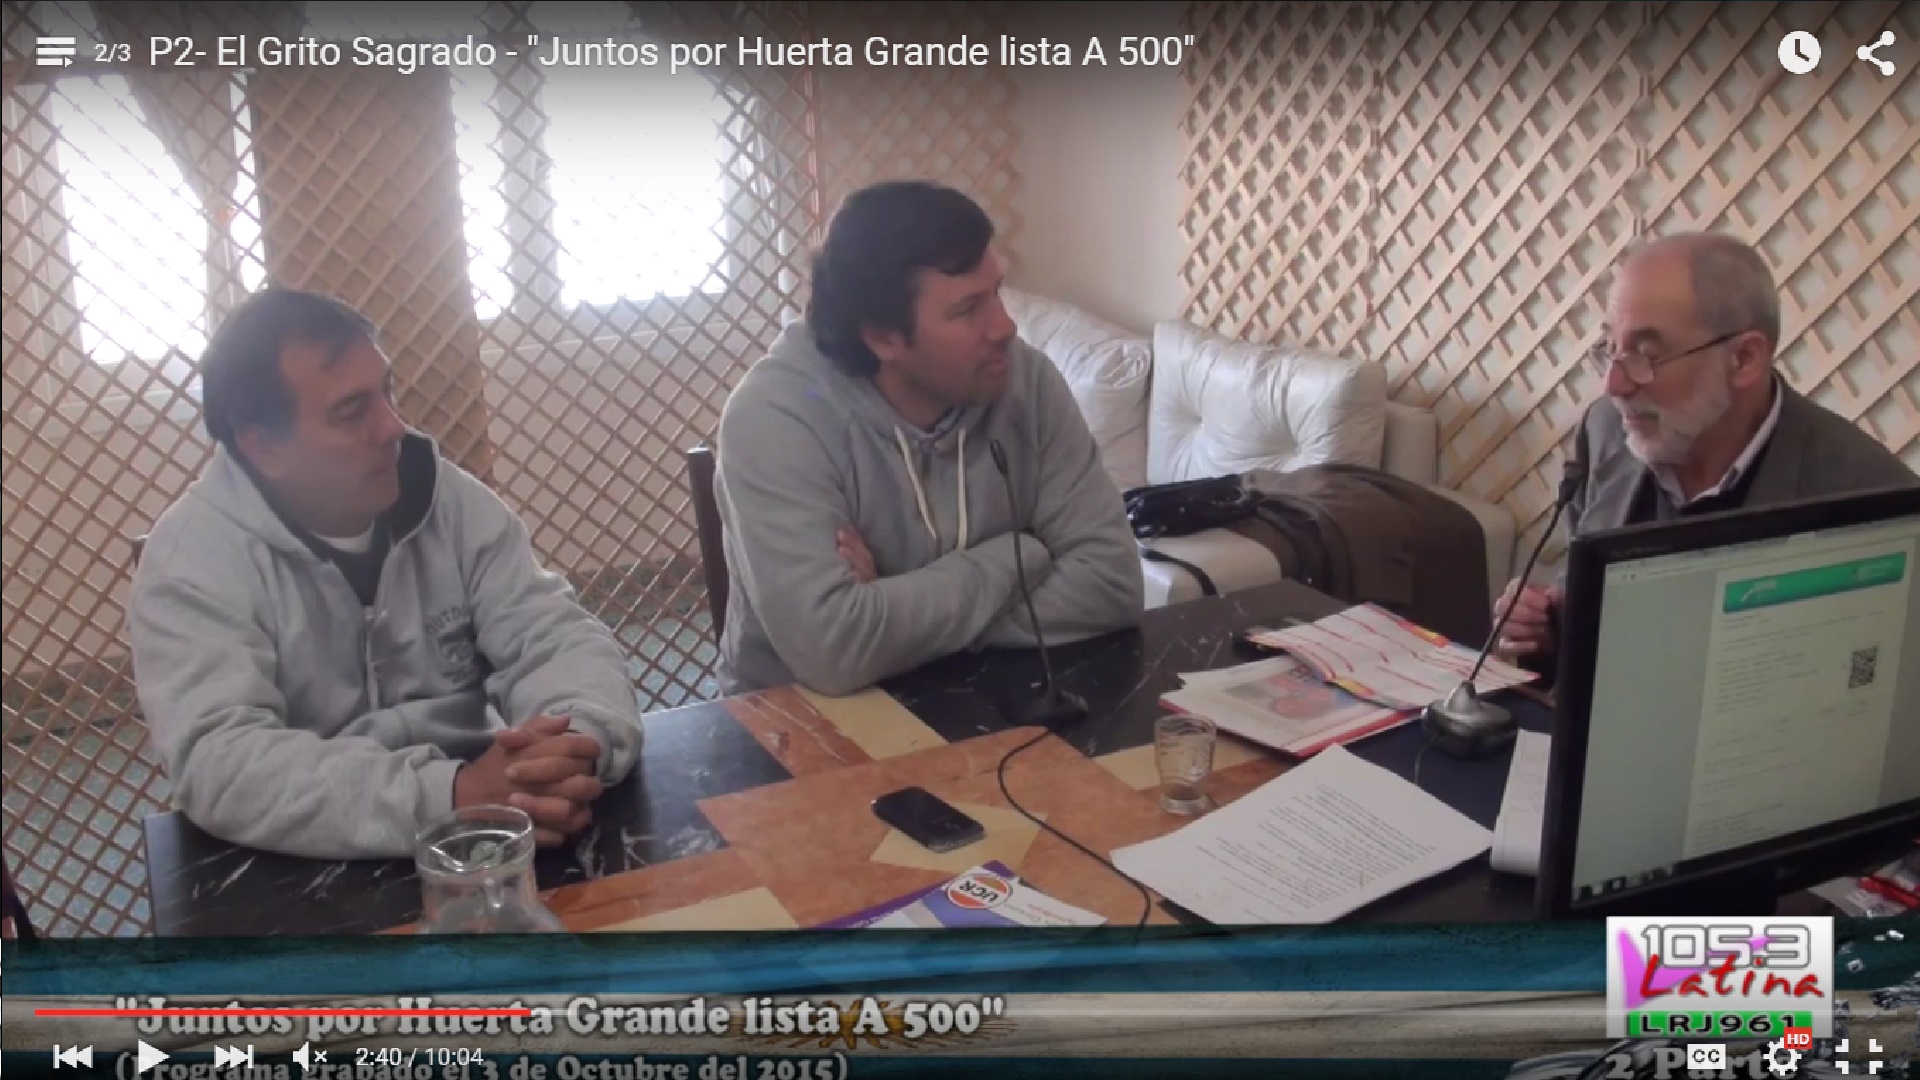 El Grito Sagrado - "Juntos por Huerta Grande lista A 500"